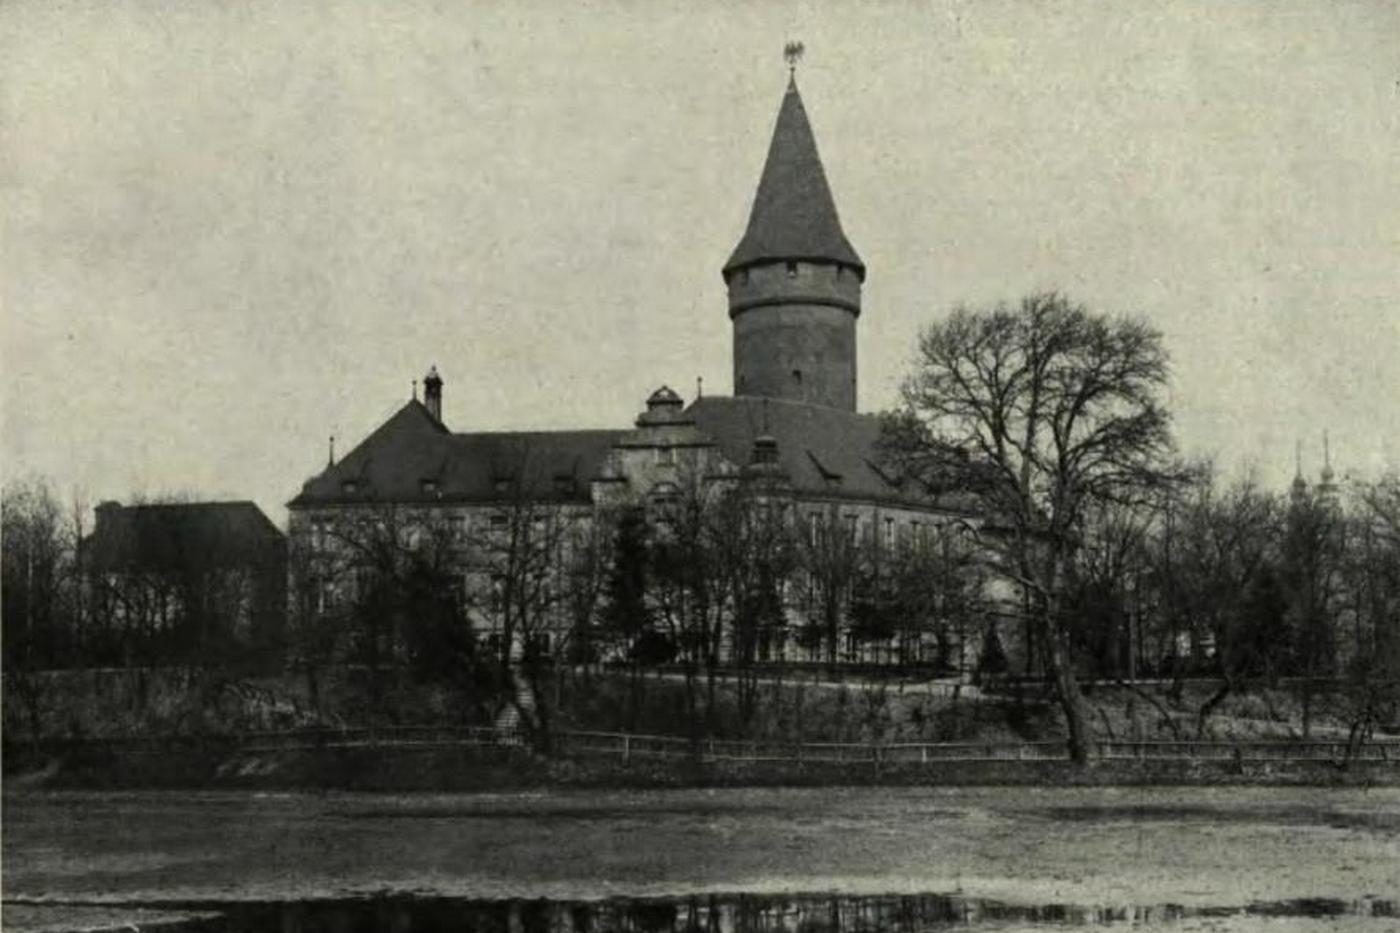 dawny zamek piastowski w Opolu